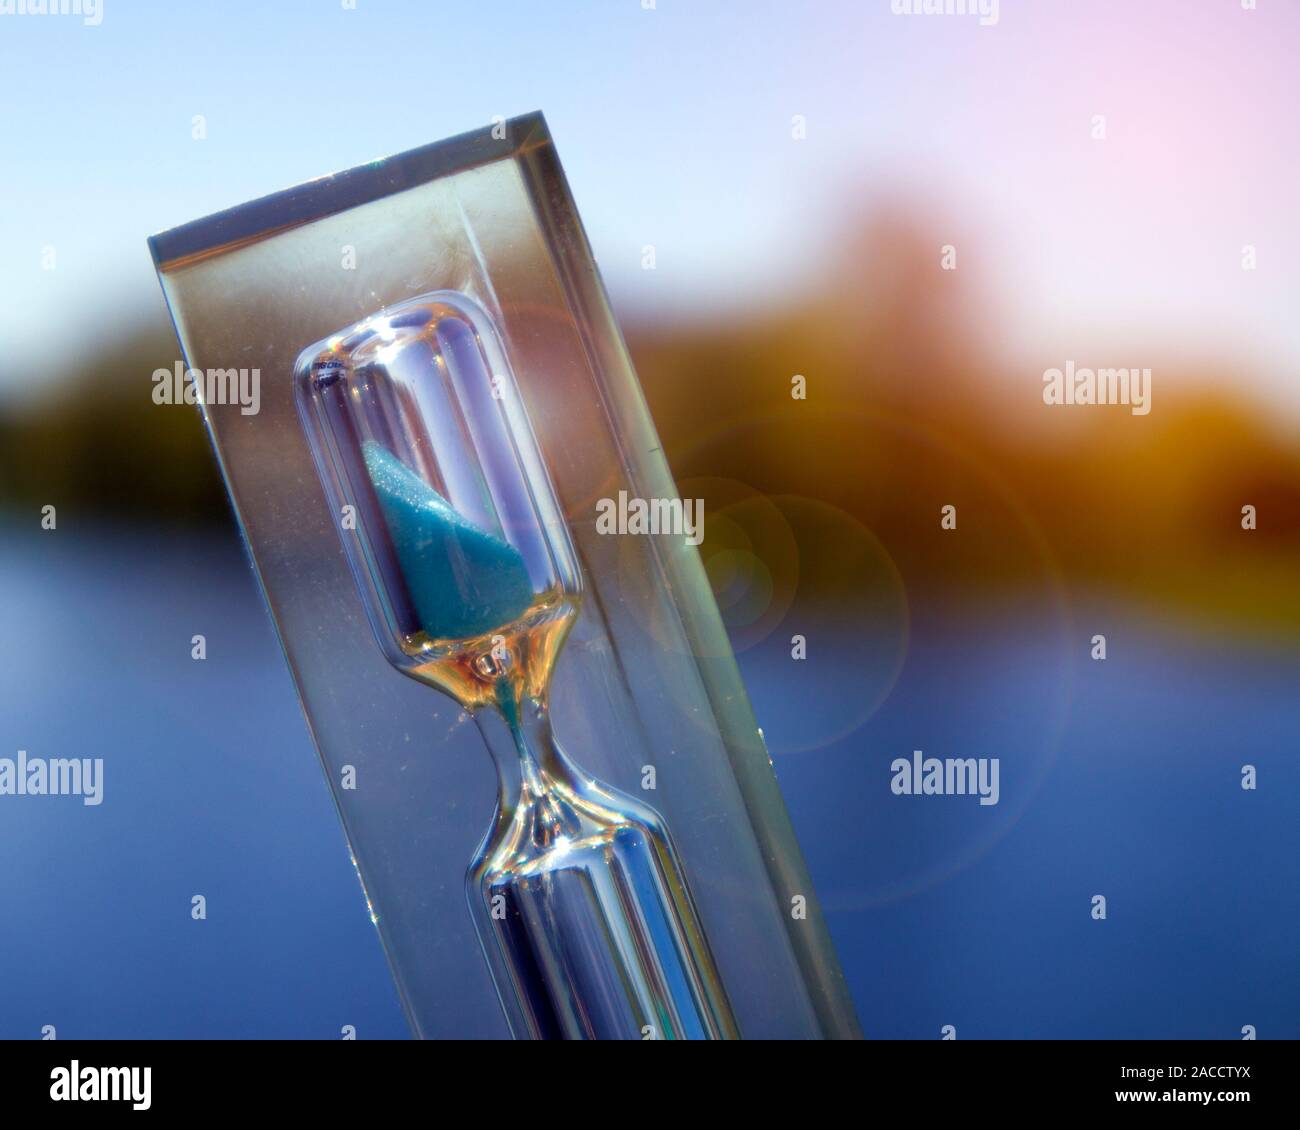 Trasparente clessidra con sabbia blu contro il paesaggio con lago calmo, il concetto di tempo Foto Stock